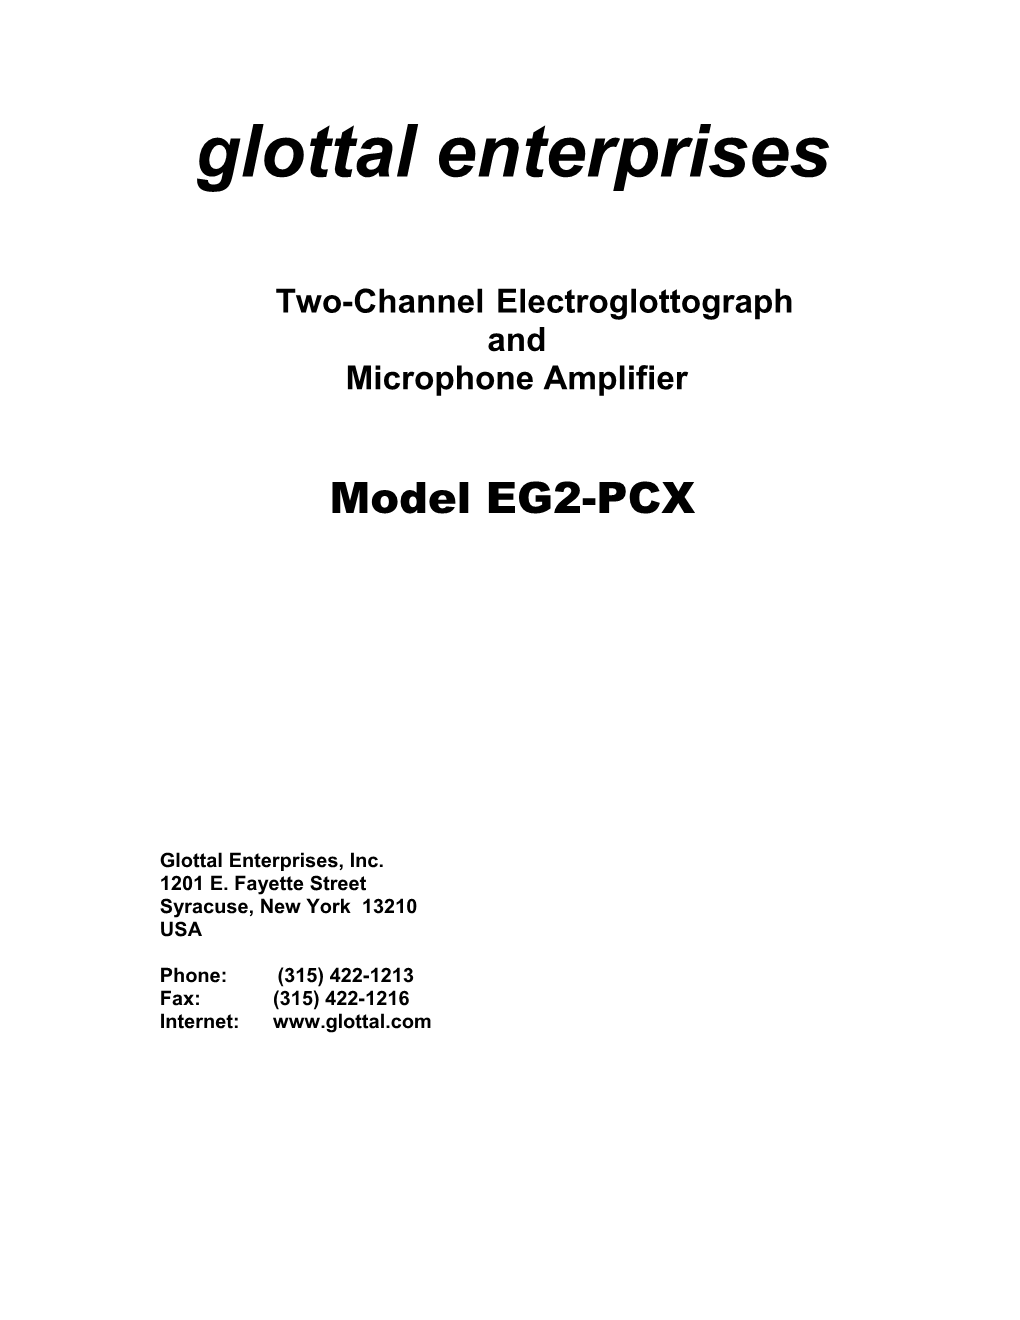 Glottal Enterprises EG2-PCX Manual 9/2006